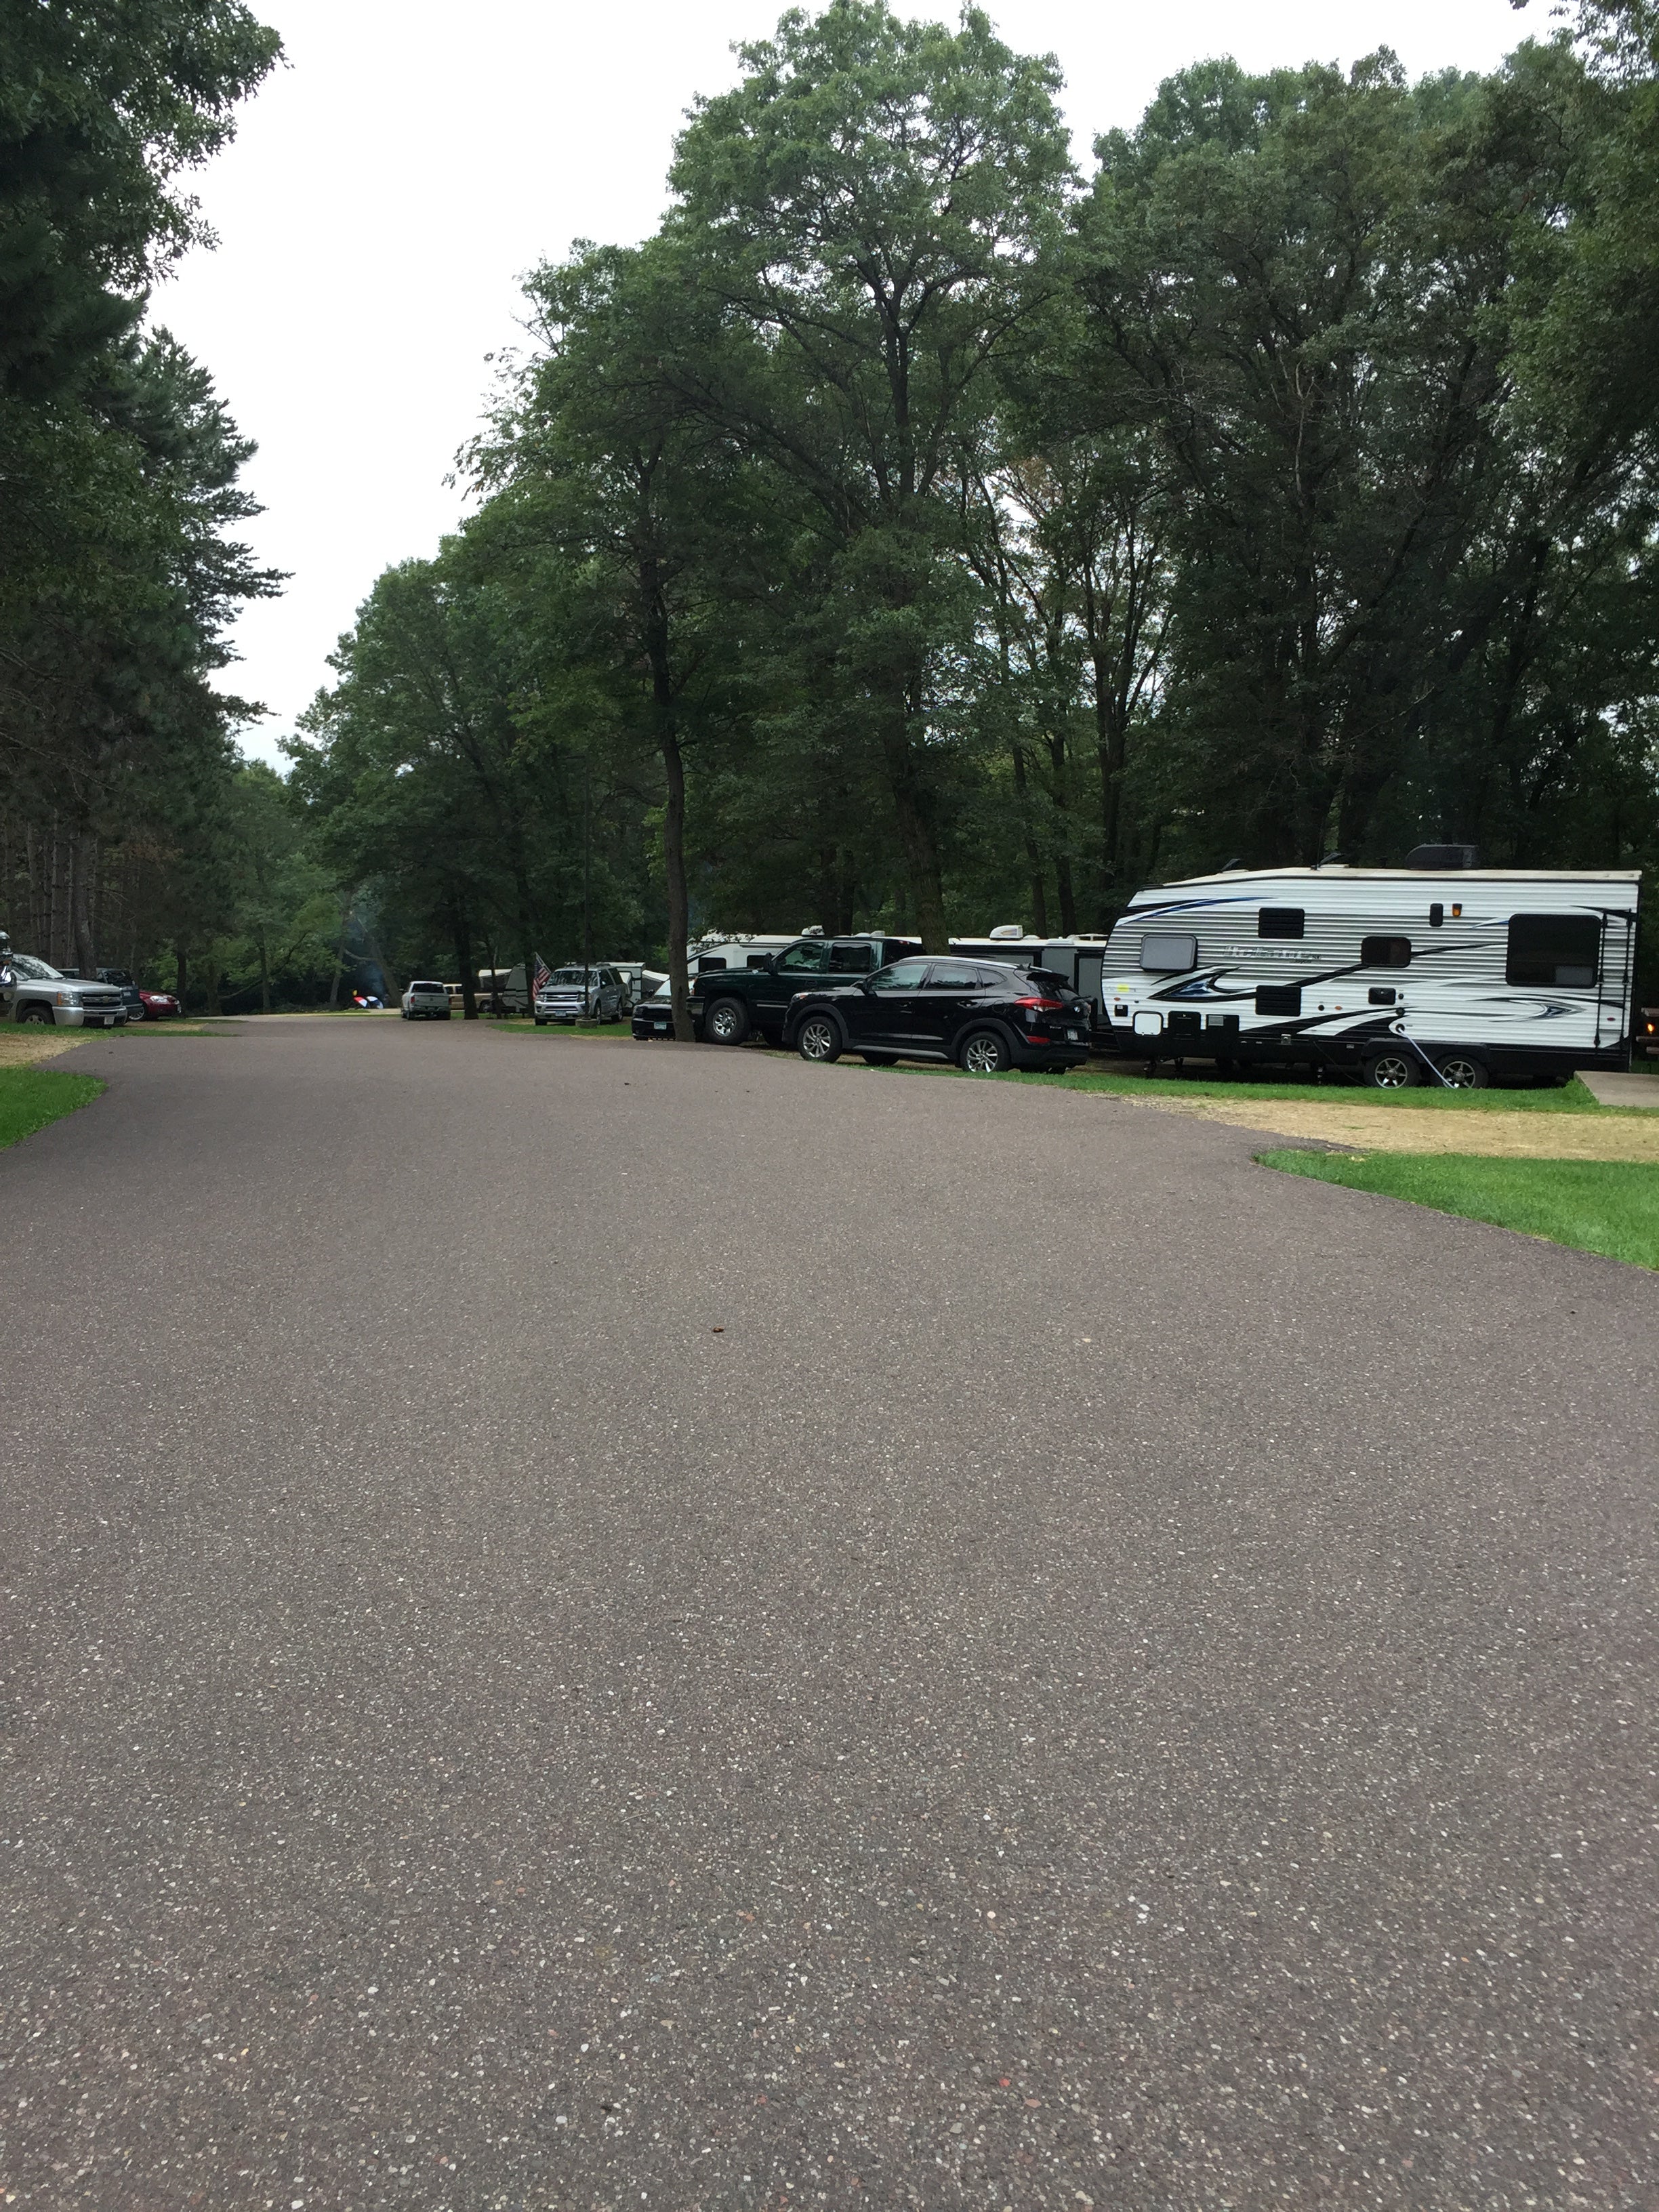 Huge campsites